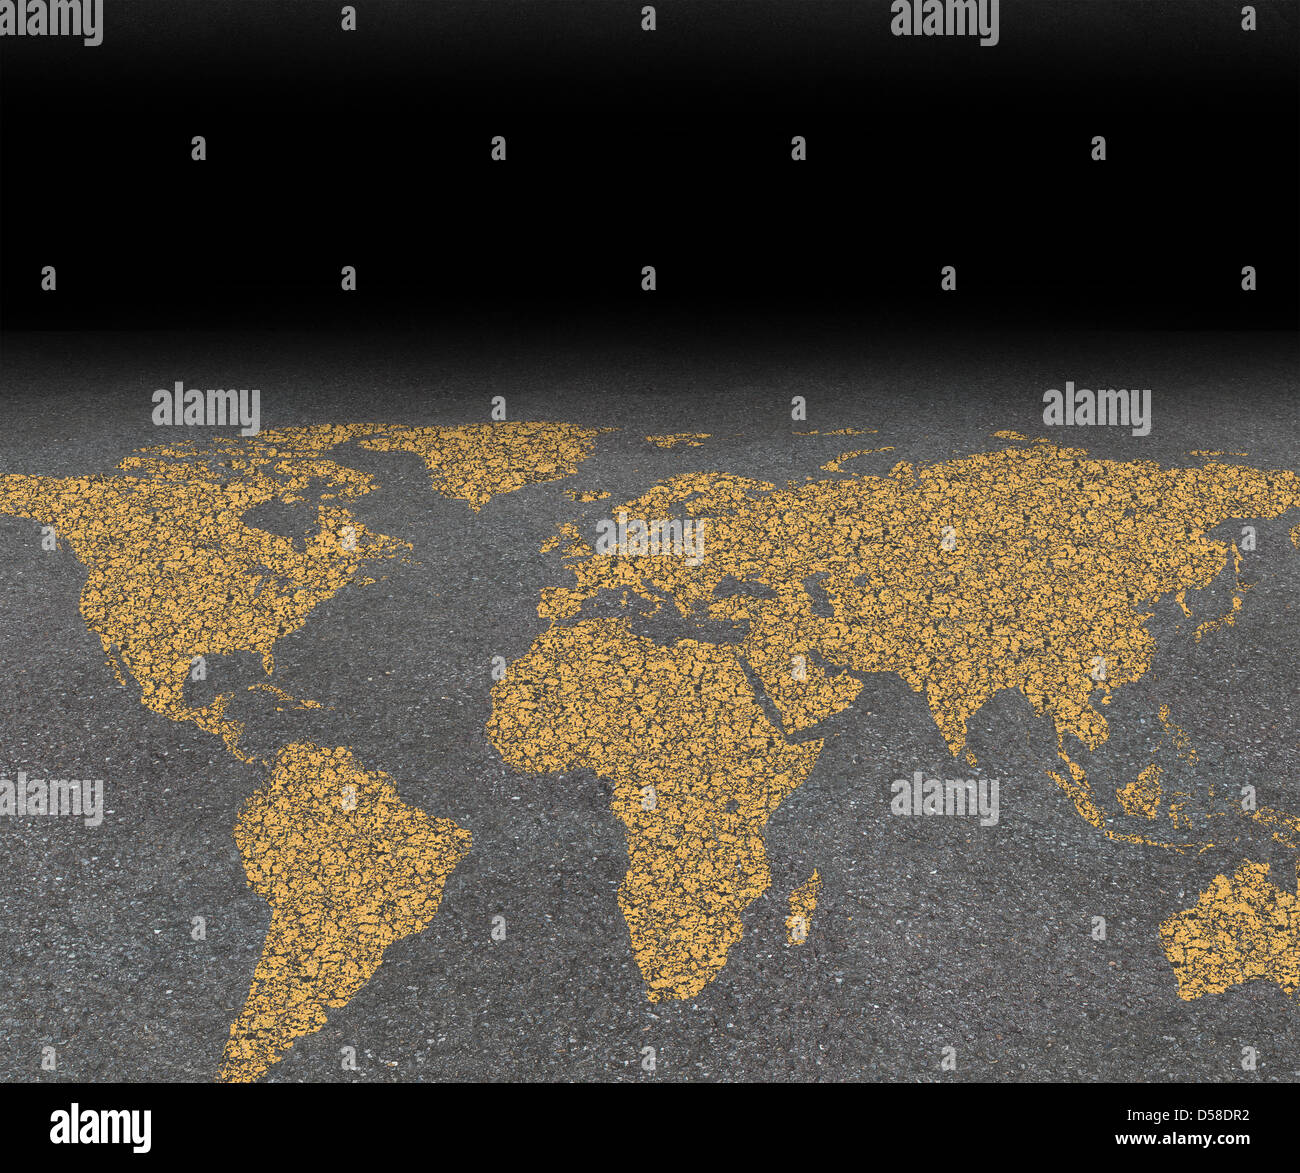 Internationale Stadt reisen und global street Festival Tourismus-Konzept mit einer Asphaltstraße mit einer Weltkarte, die als Symbol der weltweiten Reiseführer für Städte mit gelber Farbe auf der rauen Oberfläche gemalt. Stockfoto